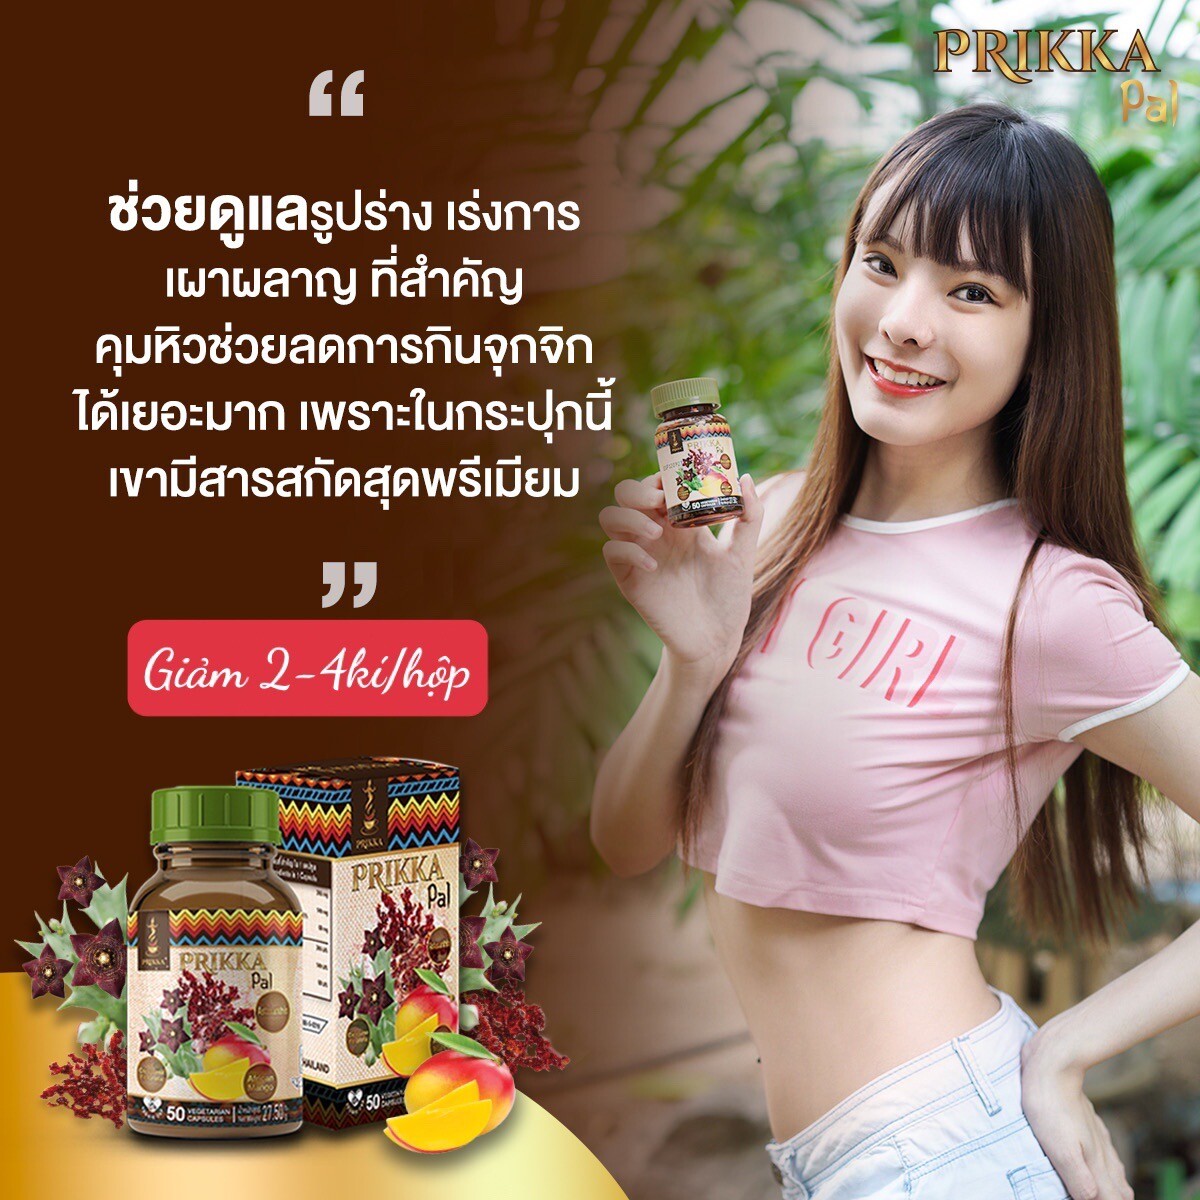 Viên uống thảo dược hỗ trợ giảm cân Prikka Pal Thailand